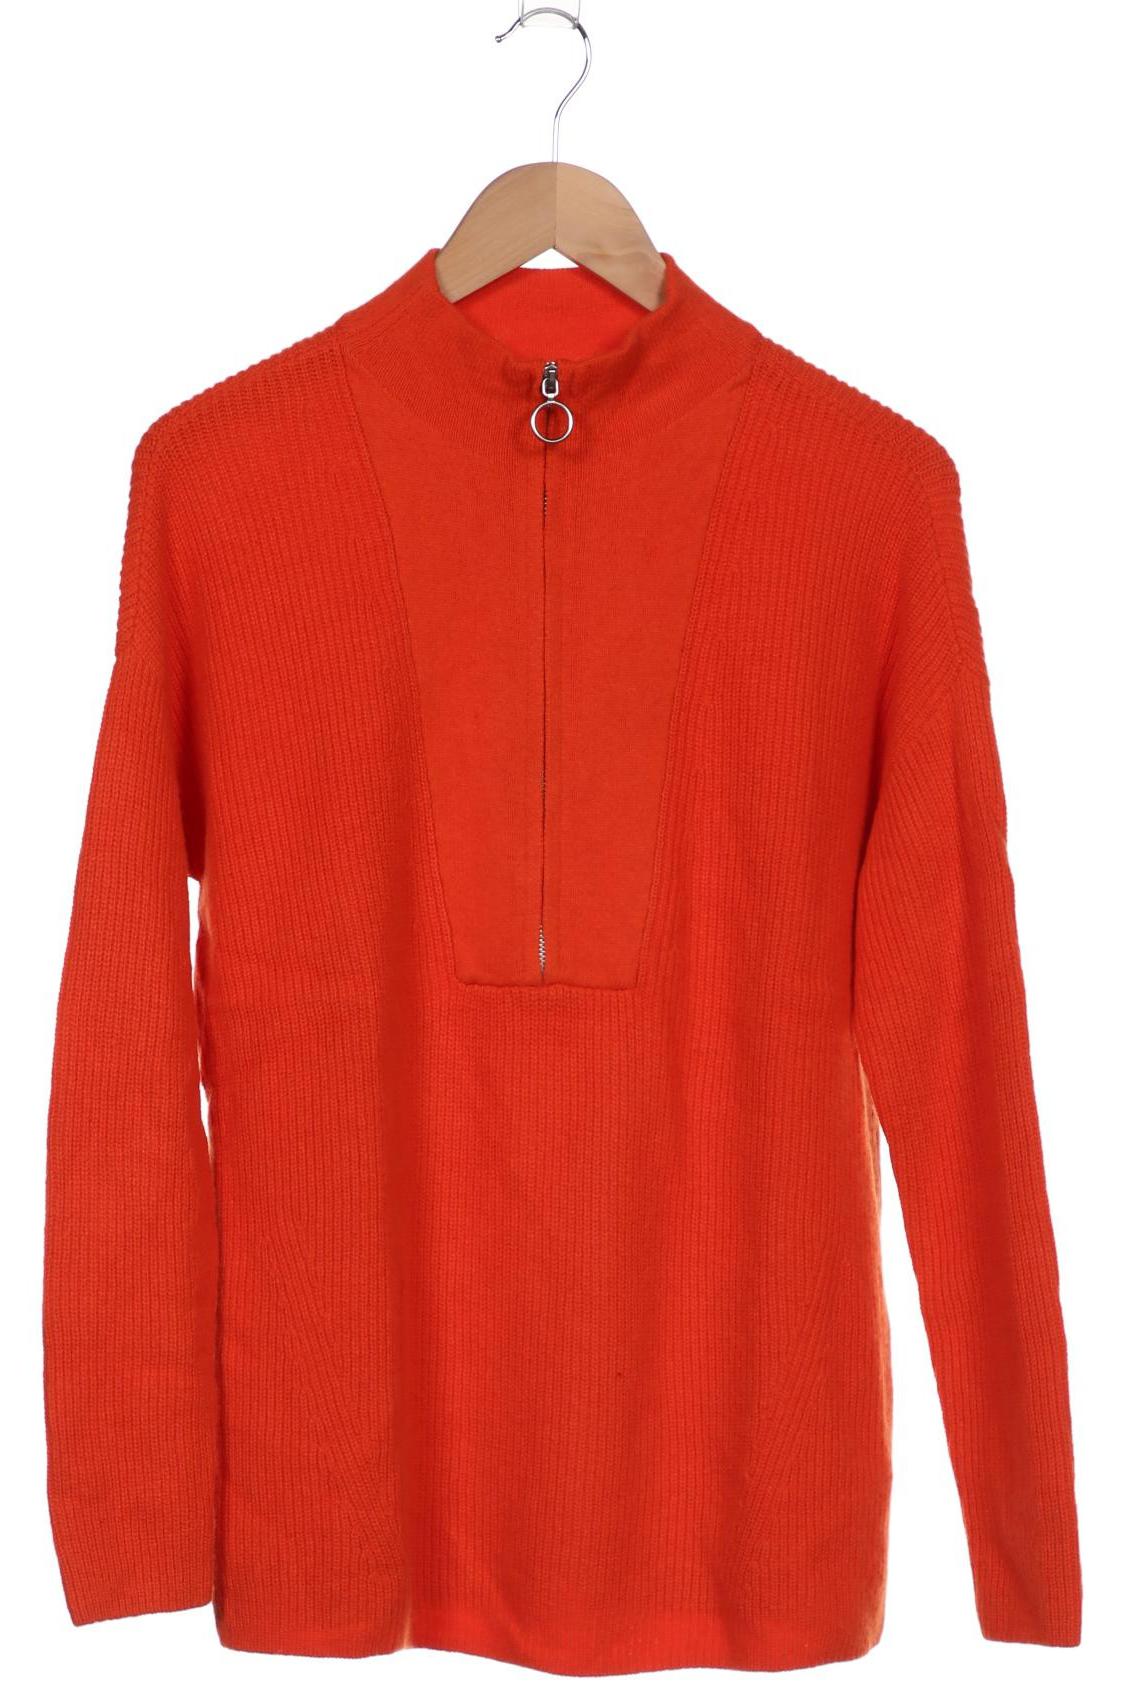 Gerry Weber Damen Pullover, orange von Gerry Weber